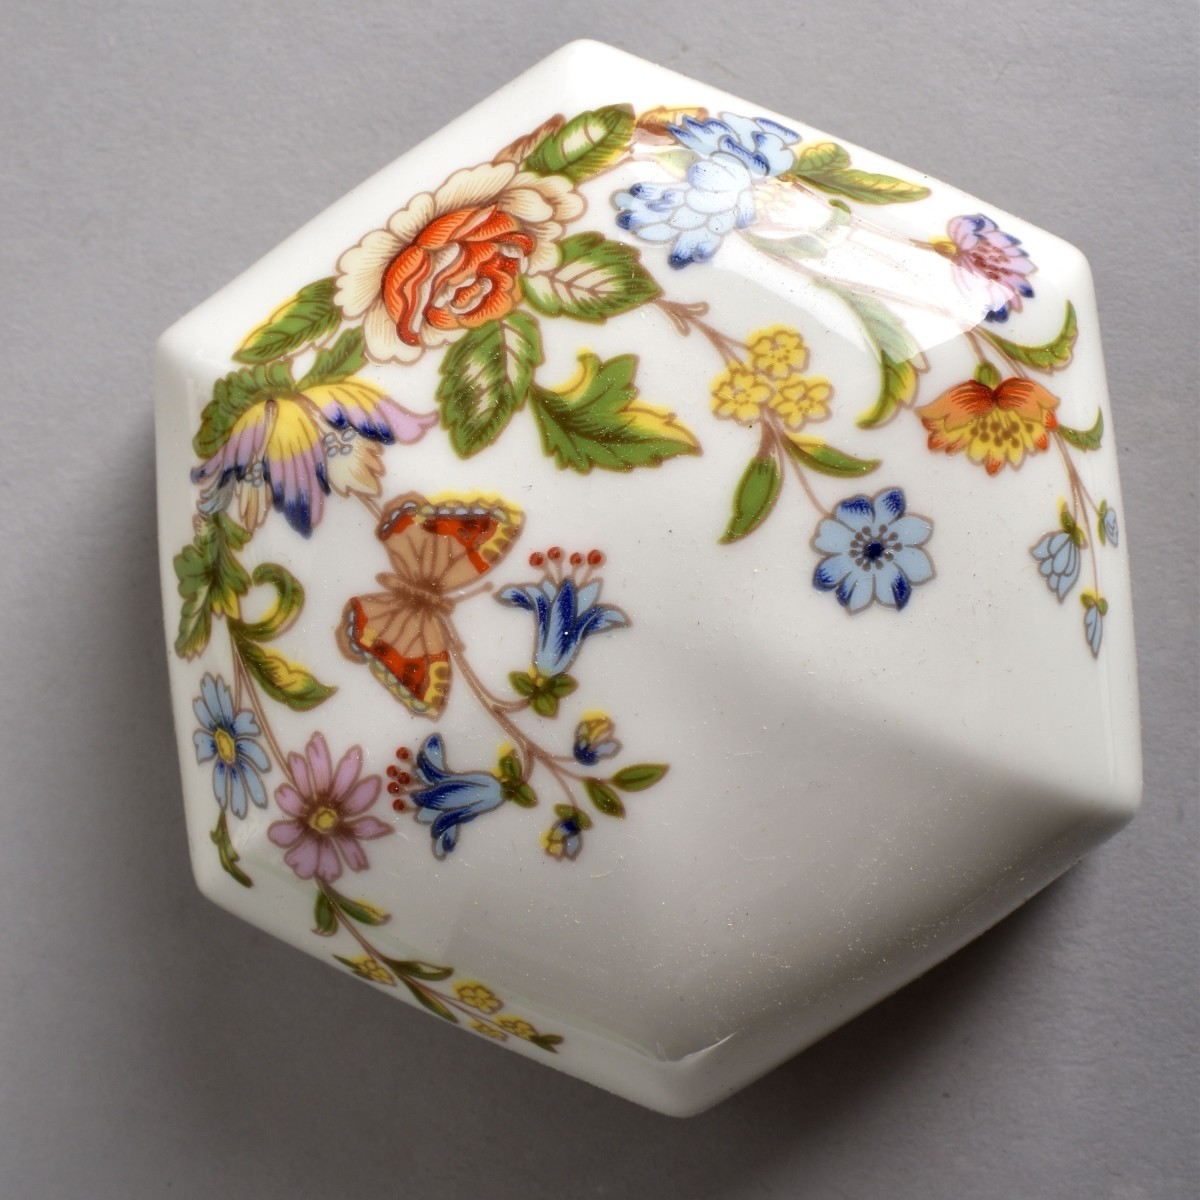 Six Vintage Assorted Porcelain Tableware